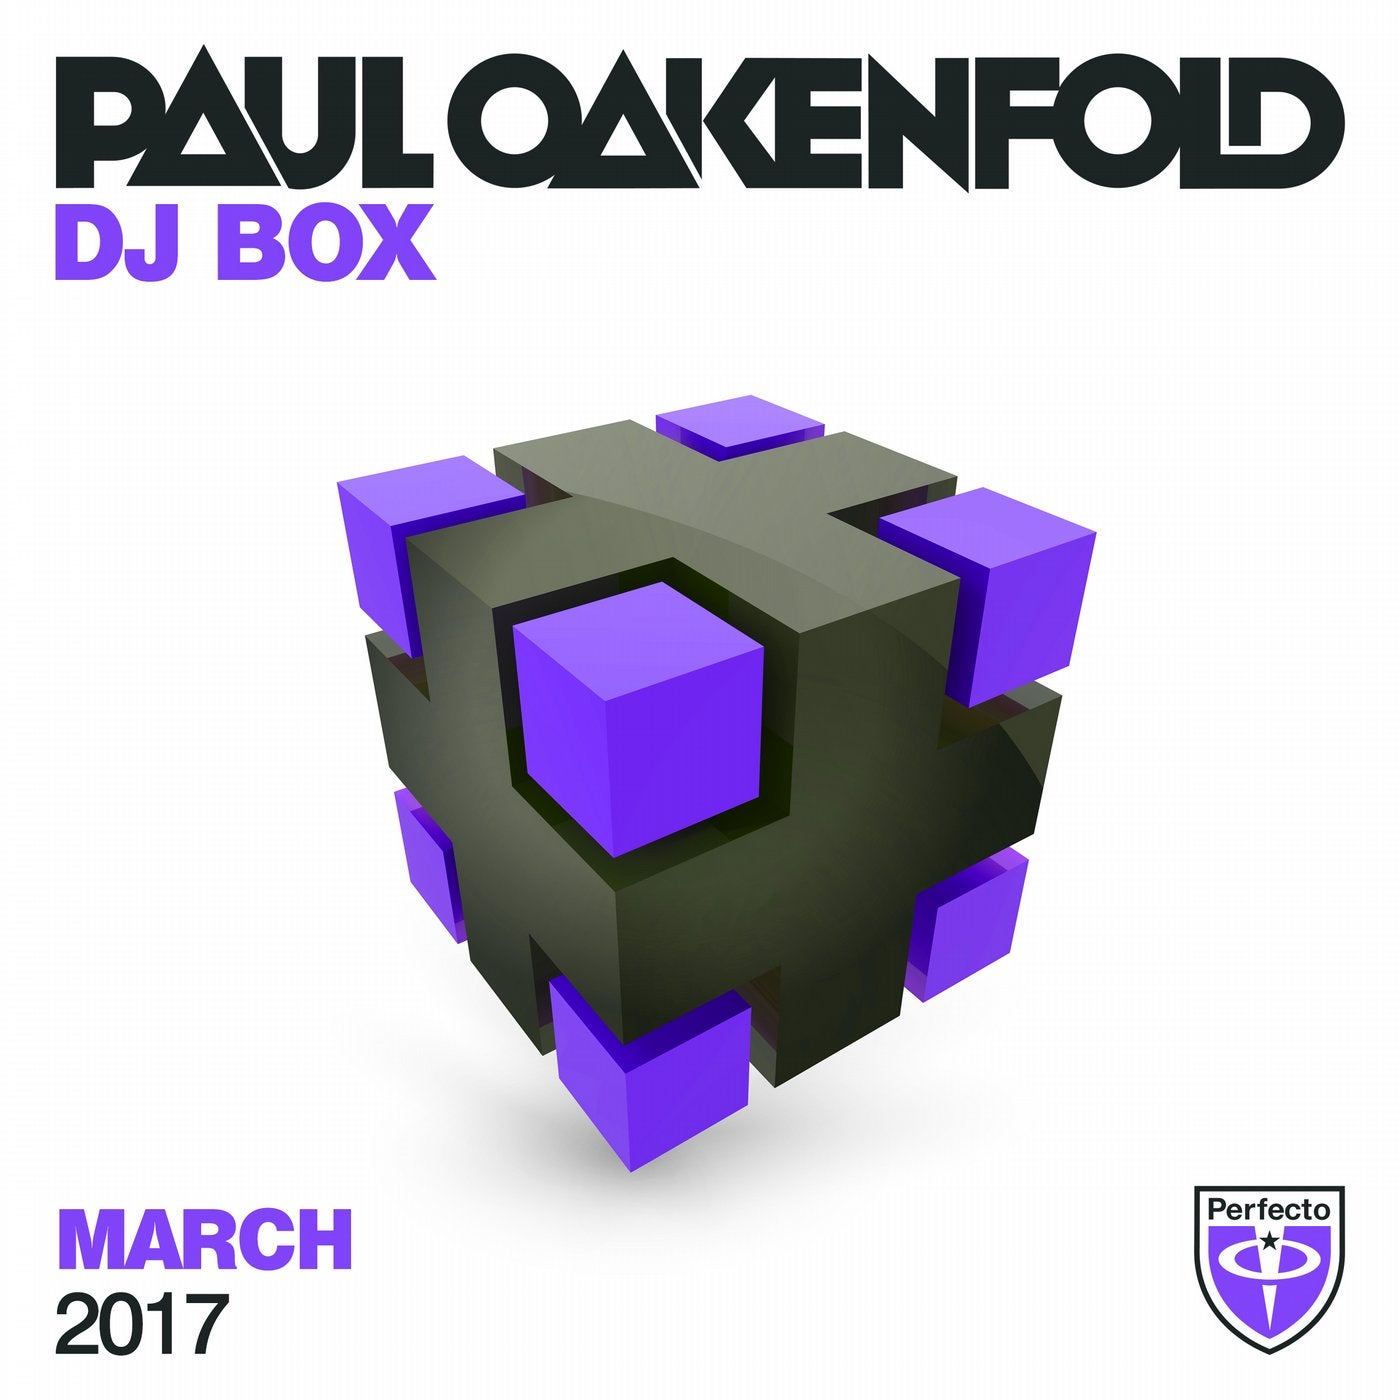 Paul Oakenfold - DJ Box March 2017